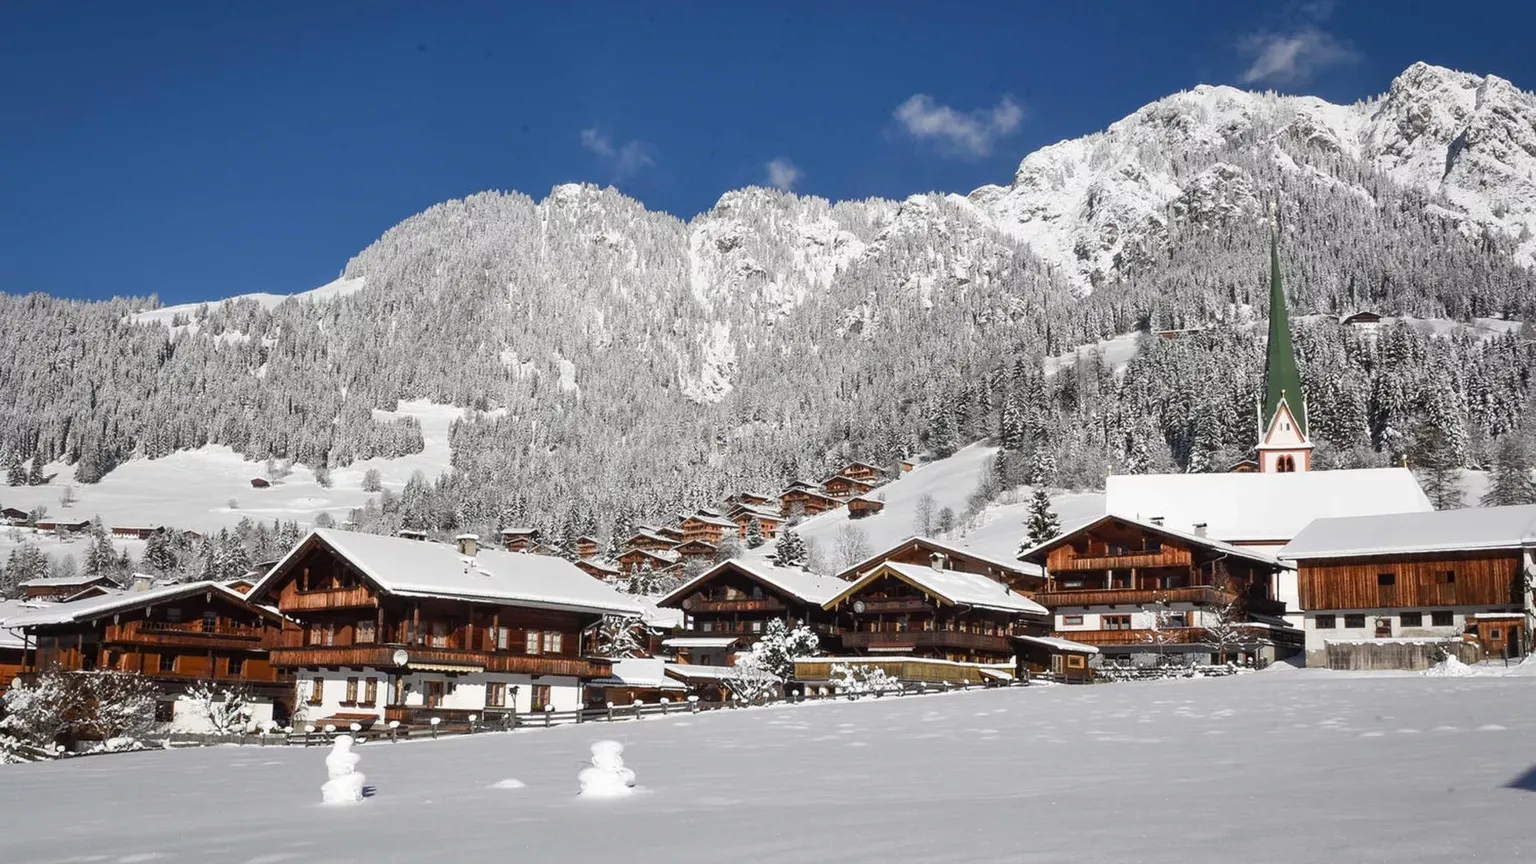 Alpbach | Tyrol Region, Austria - Rated 4.9